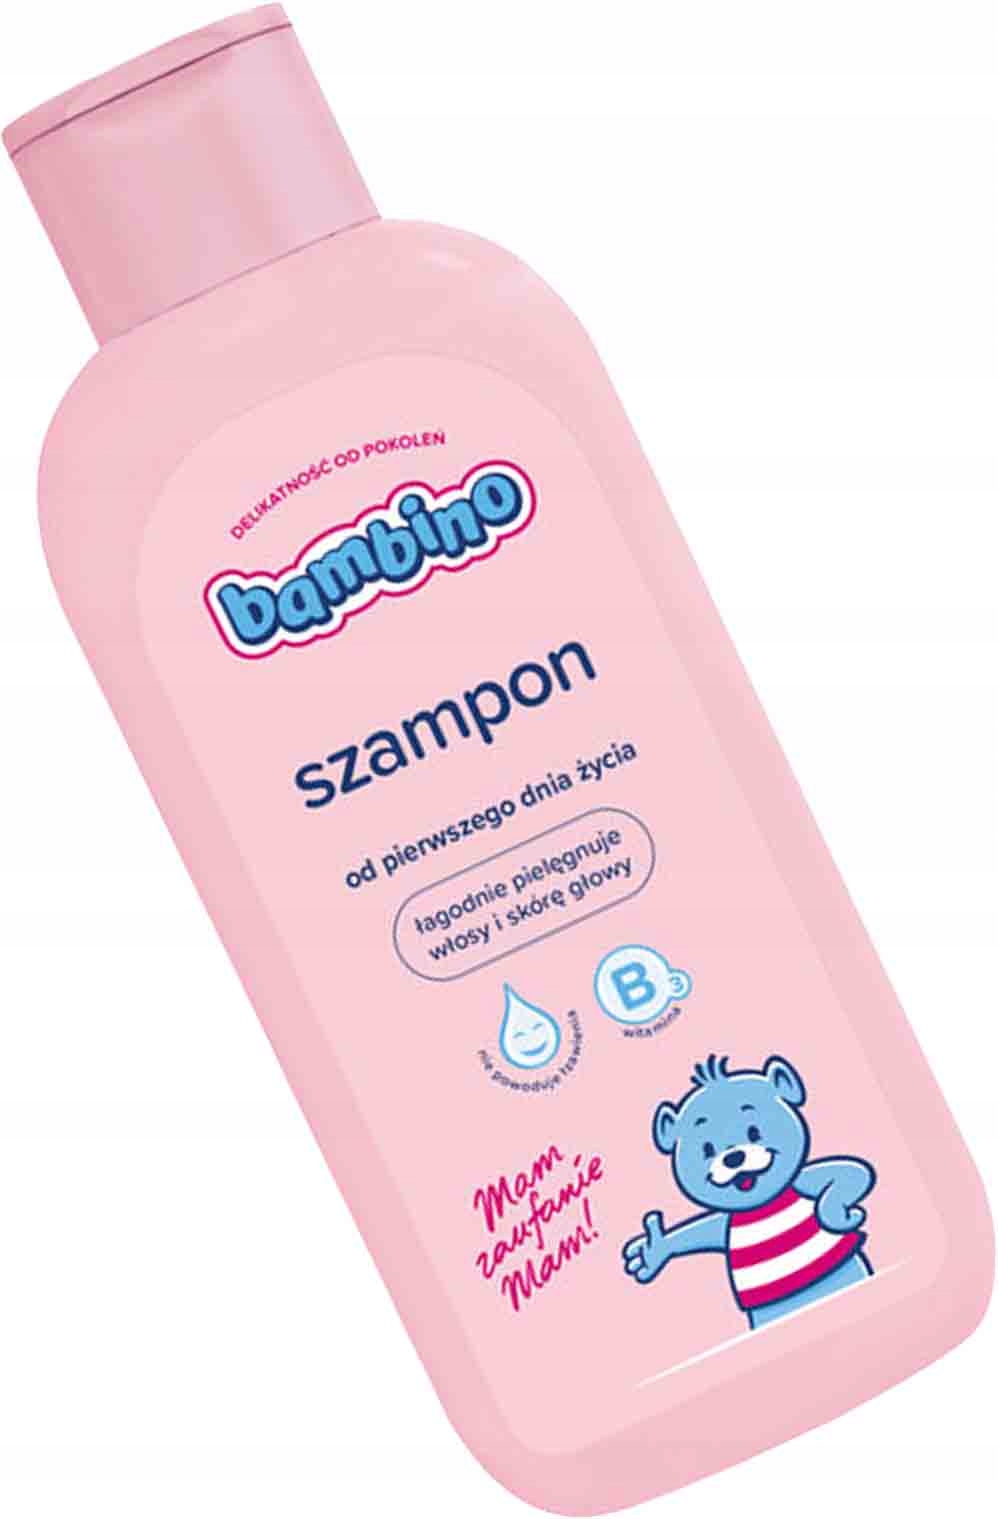 szampon dla mężczyzn vs kobiet